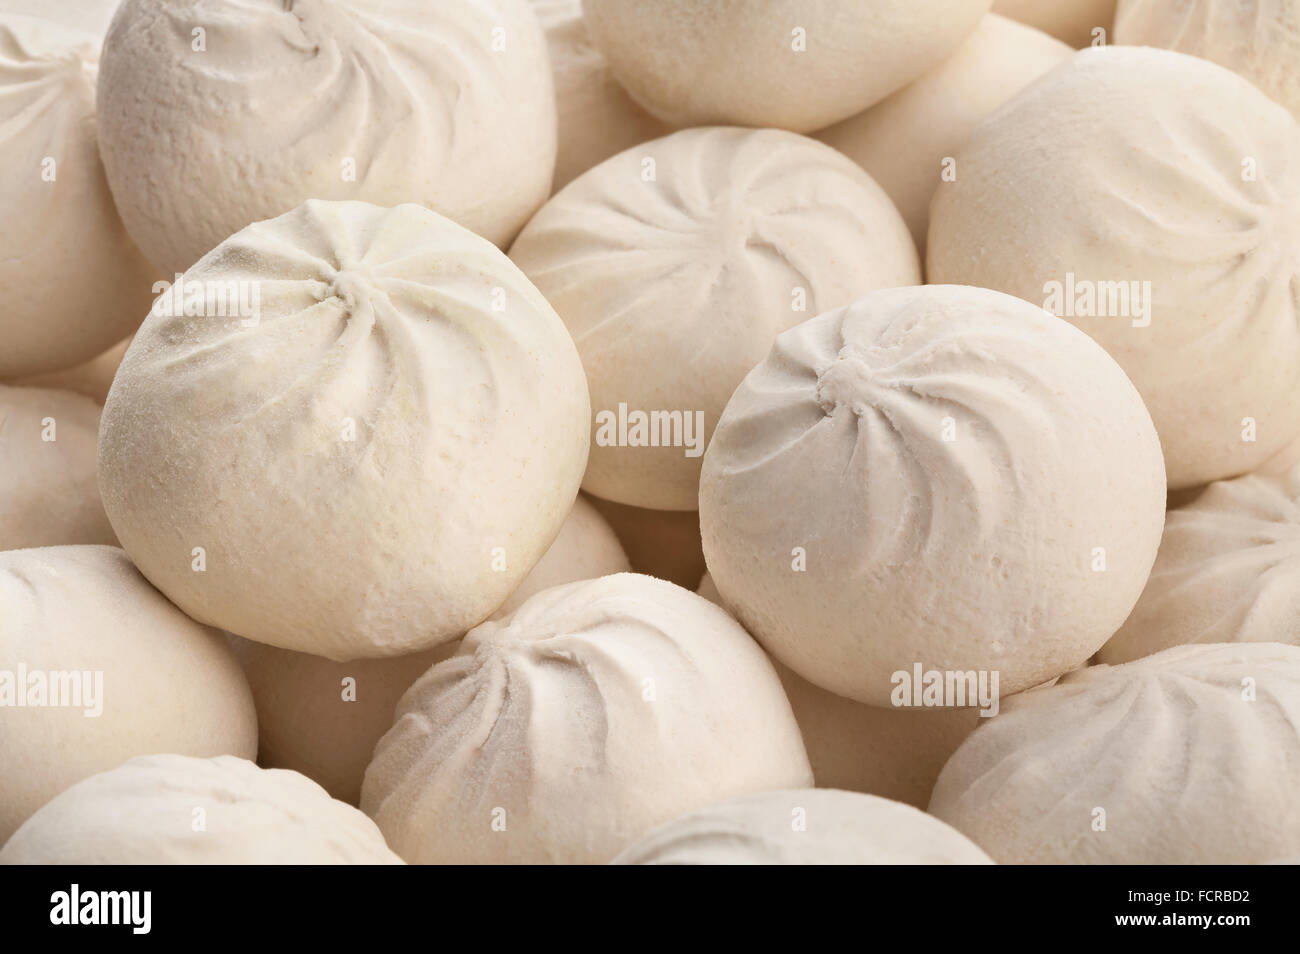 dumplings closeup Stock Photo